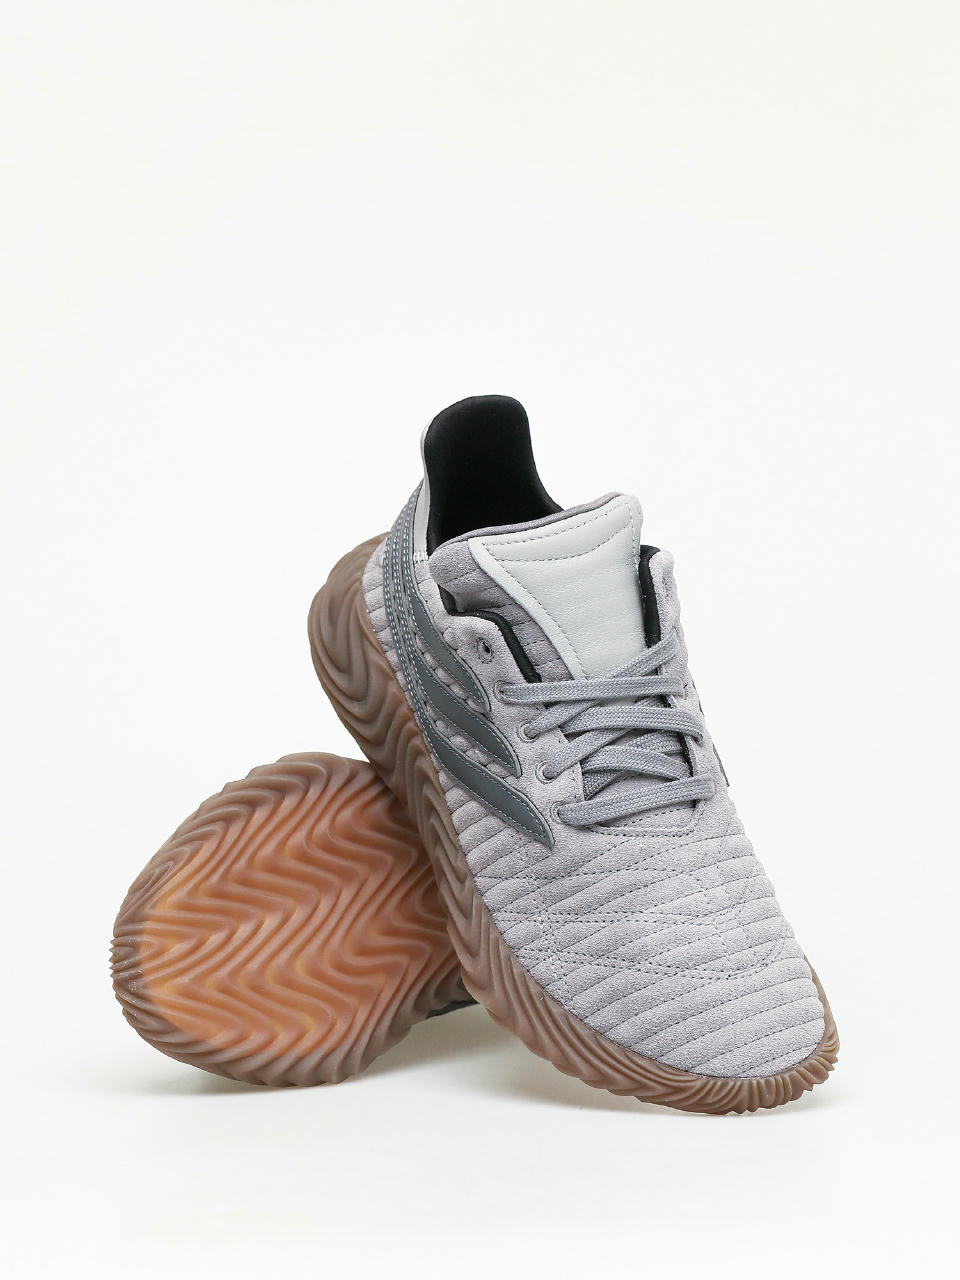 Pijnboom stormloop Oxideren adidas Sobakov Shoes (grethr/grefou/gretwo)